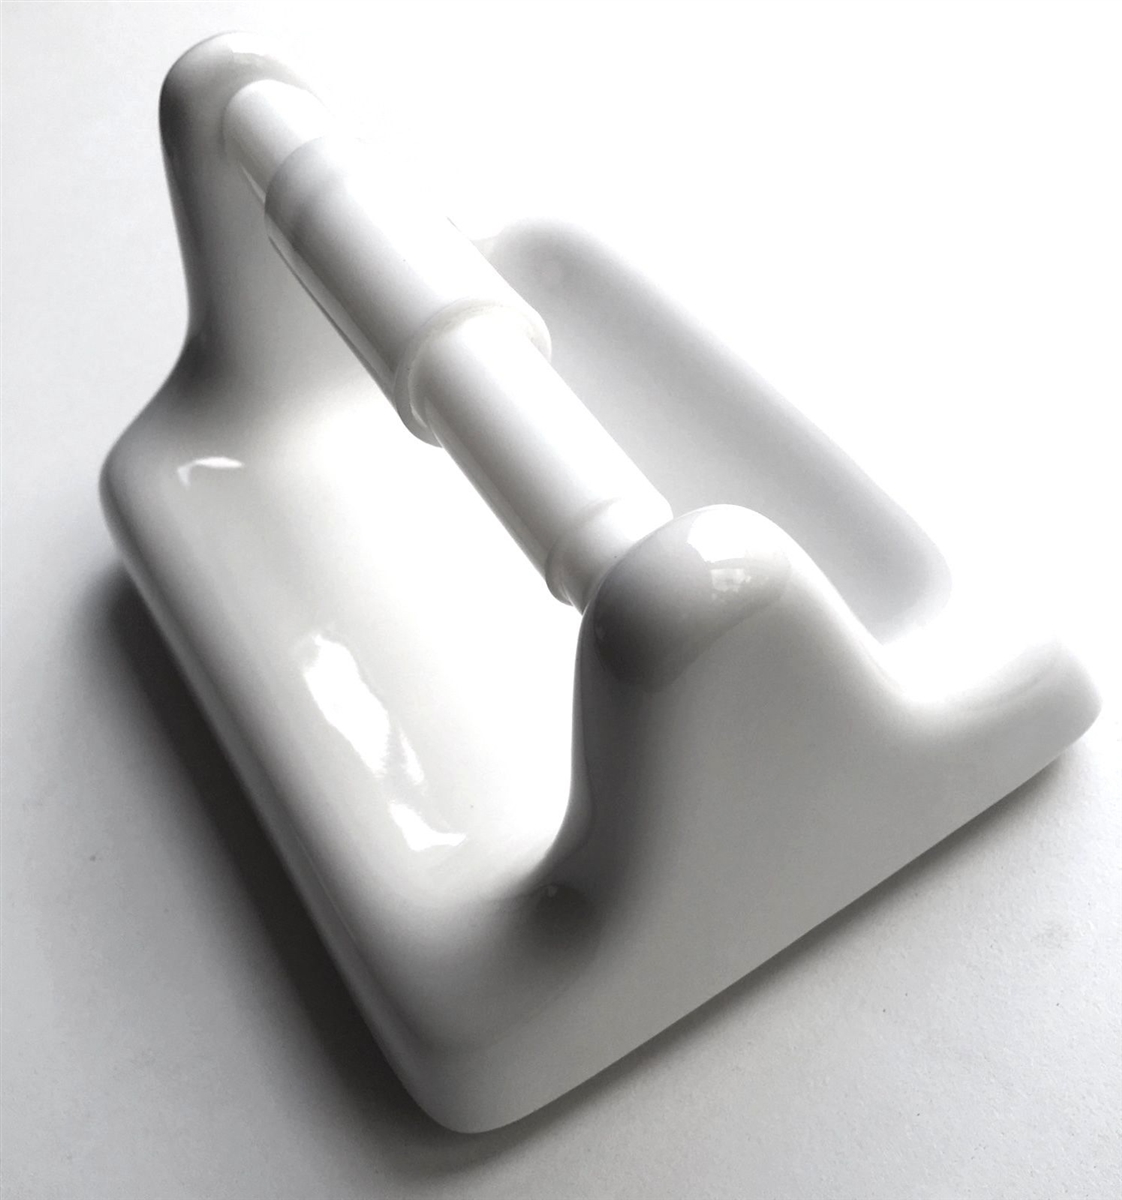 Paper roll holder porcelain | Manufactum